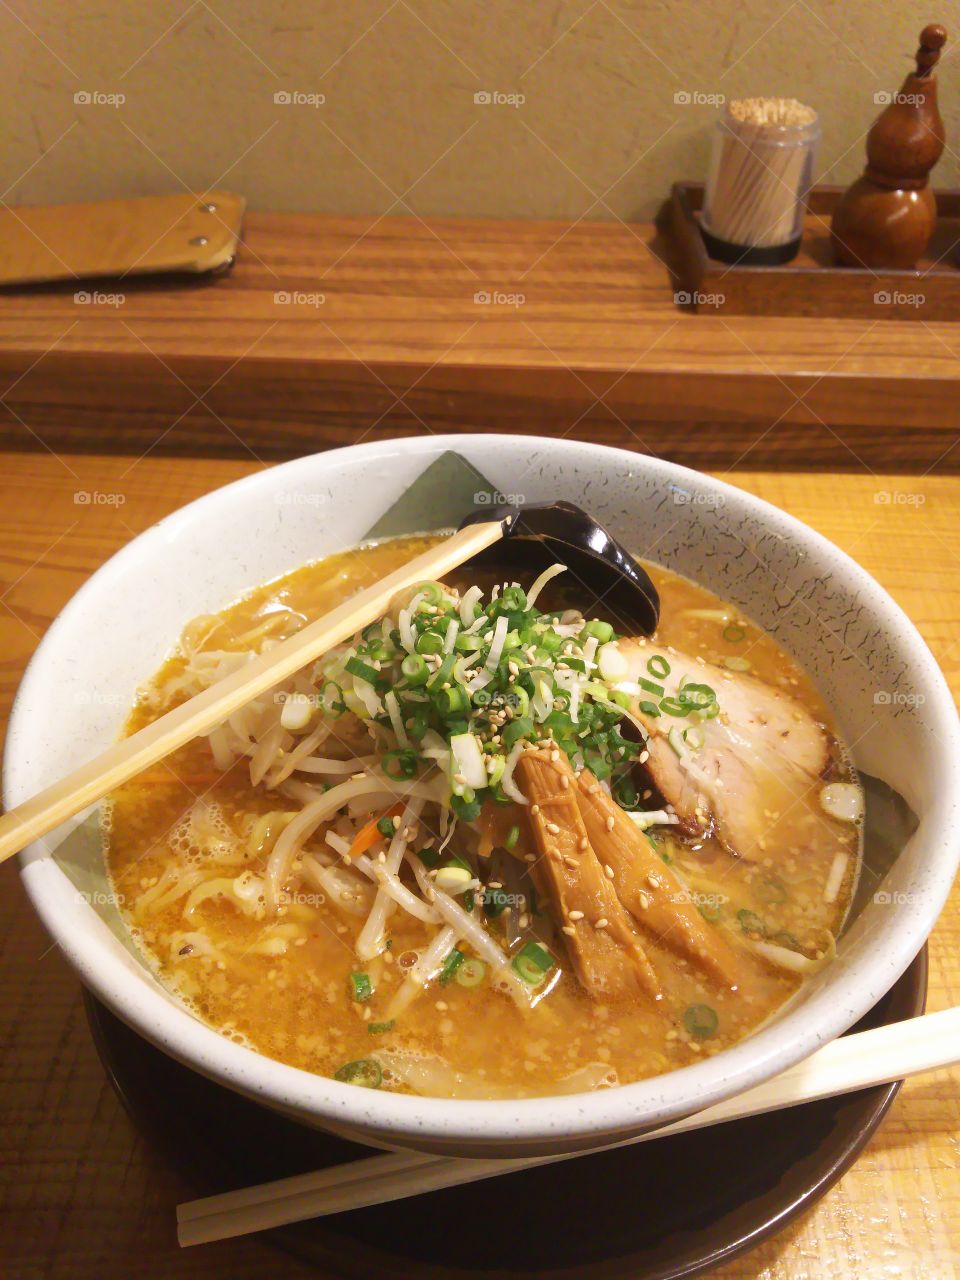 miso-soup noodle
味噌丸 720円